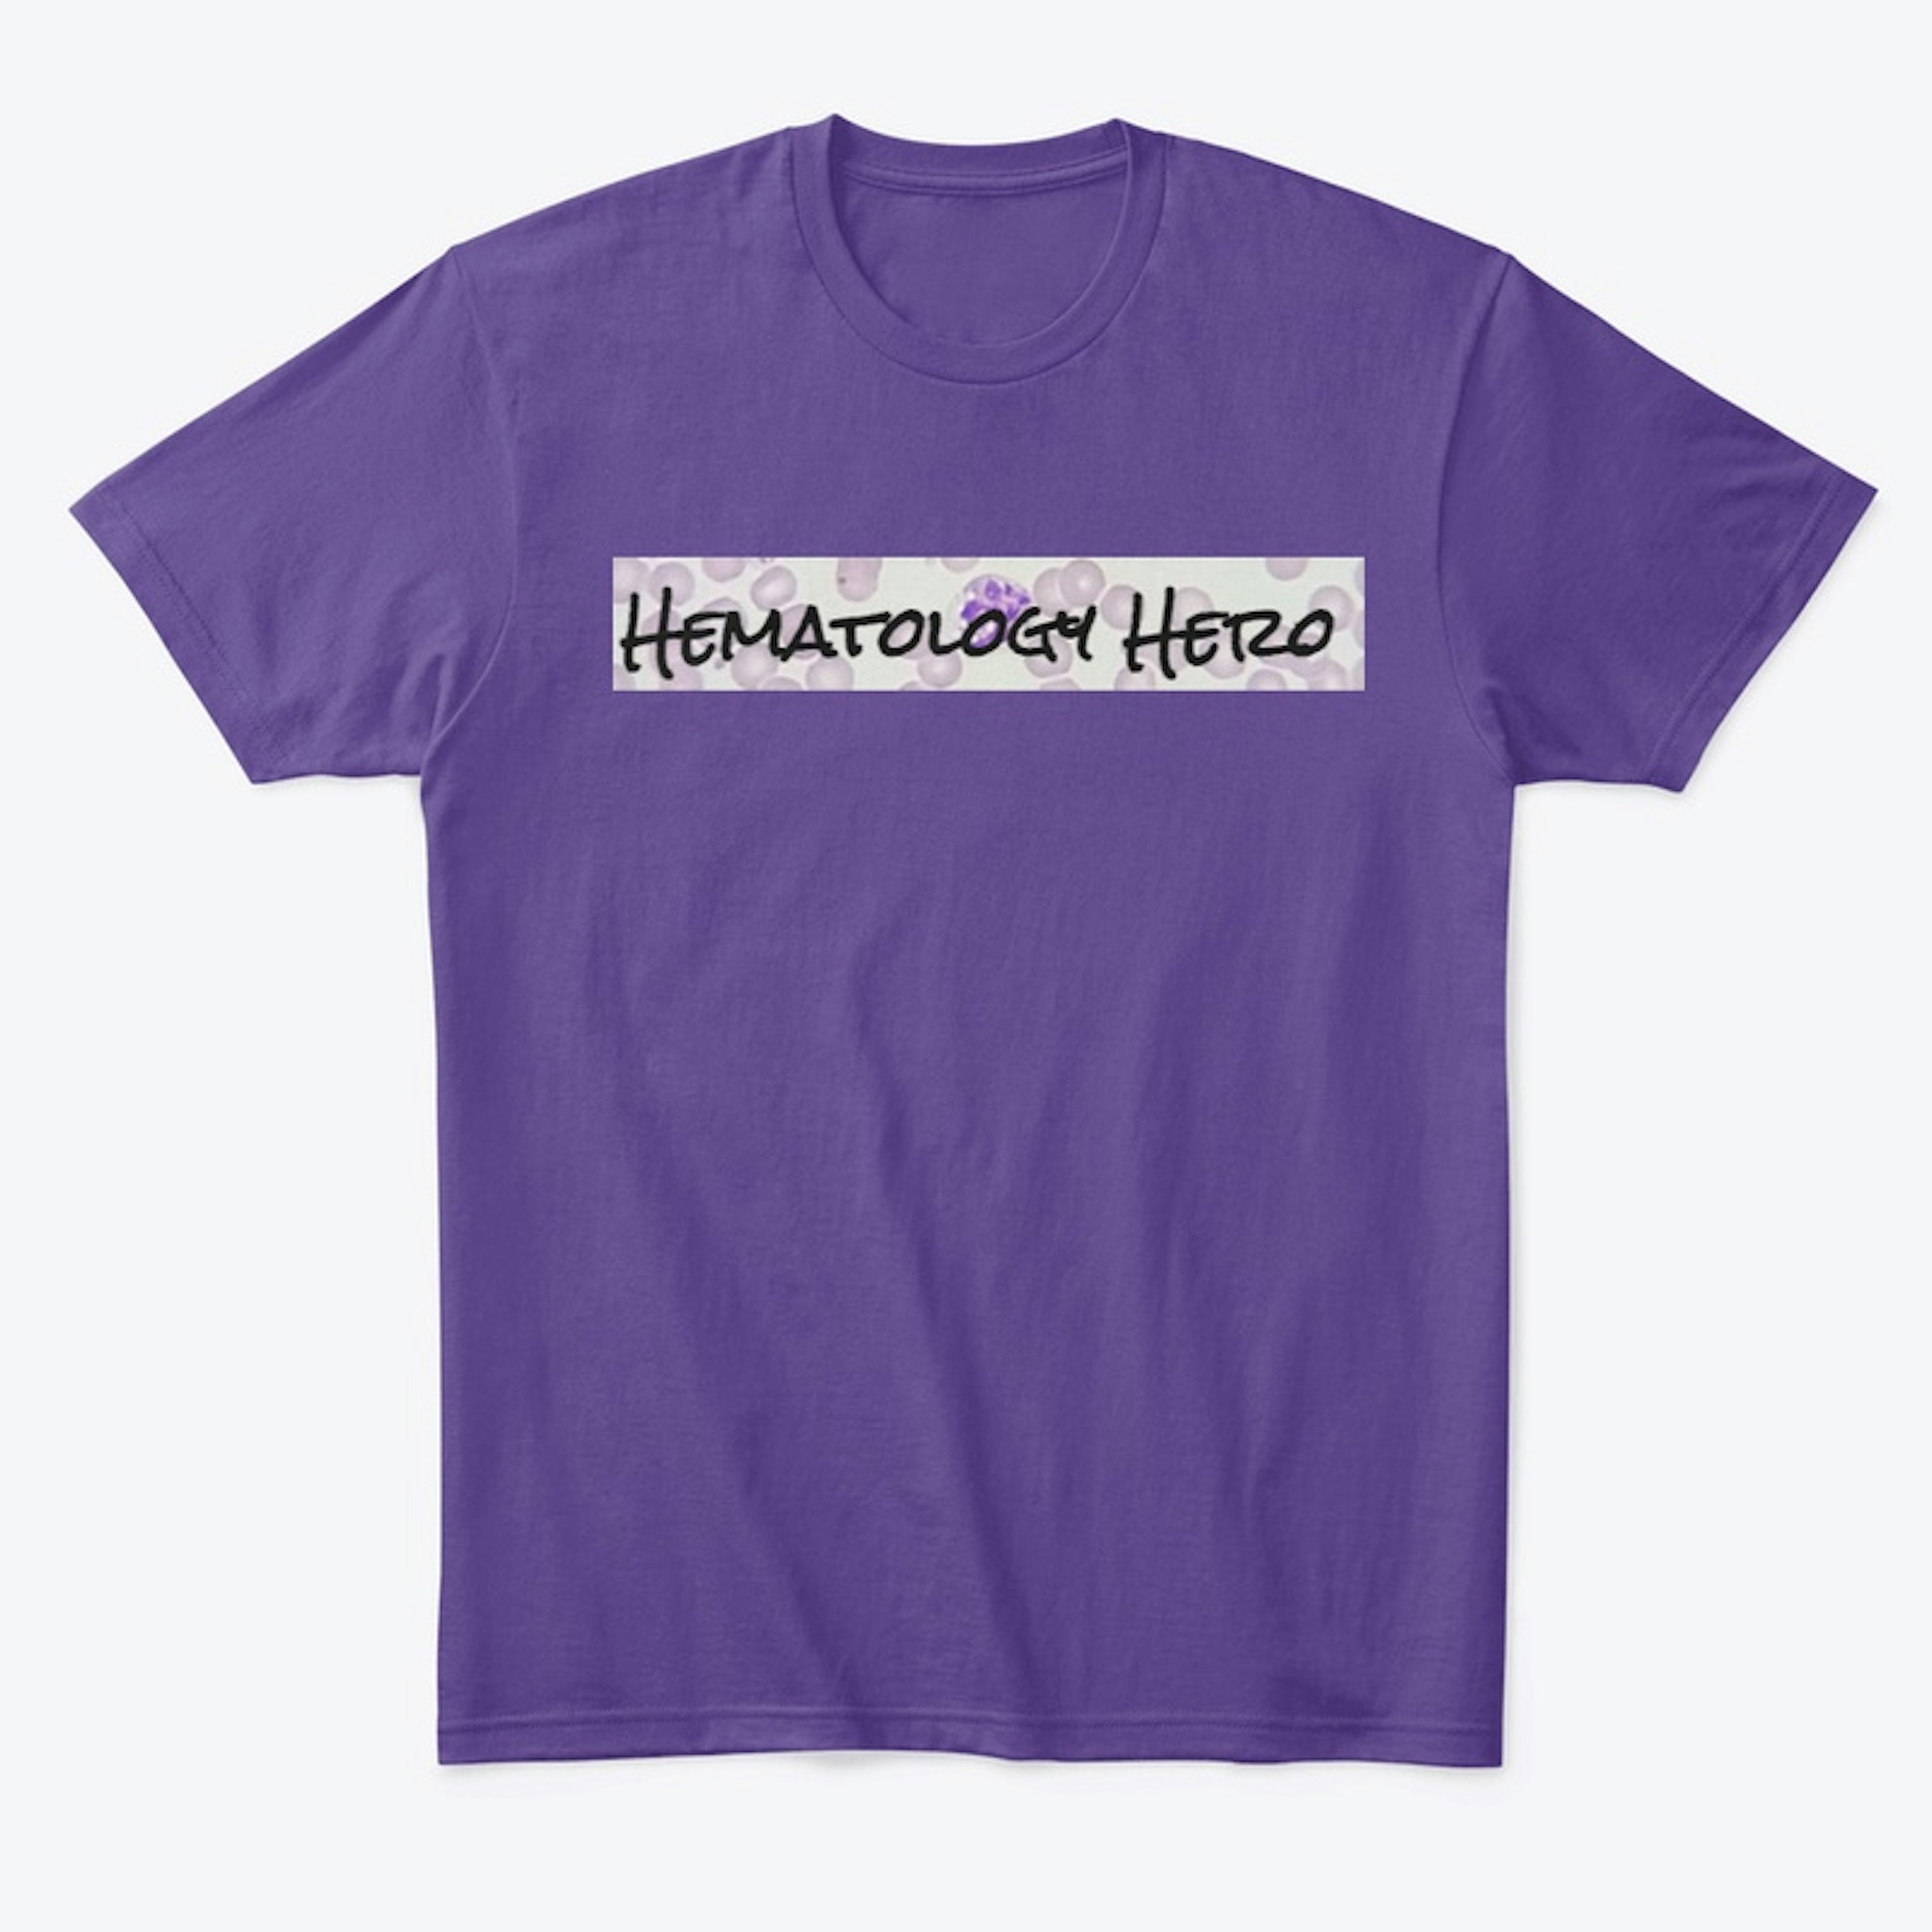 Hematology Heroes